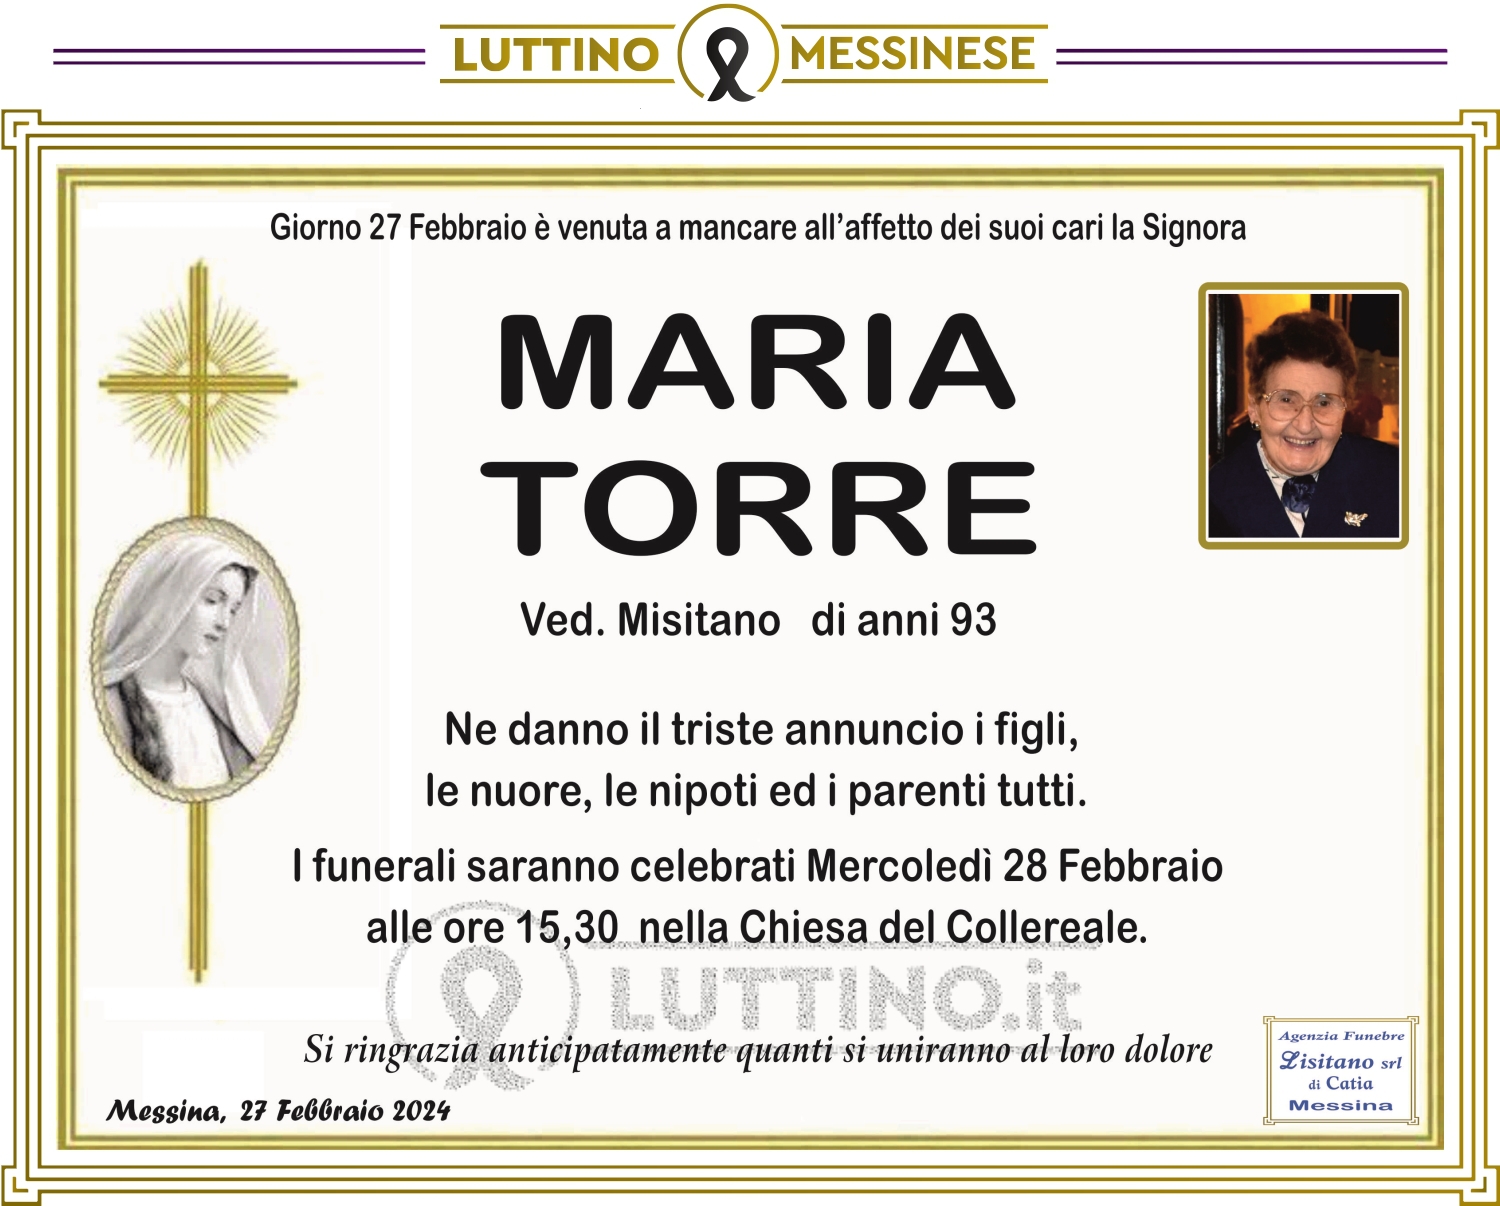 Maria Torre